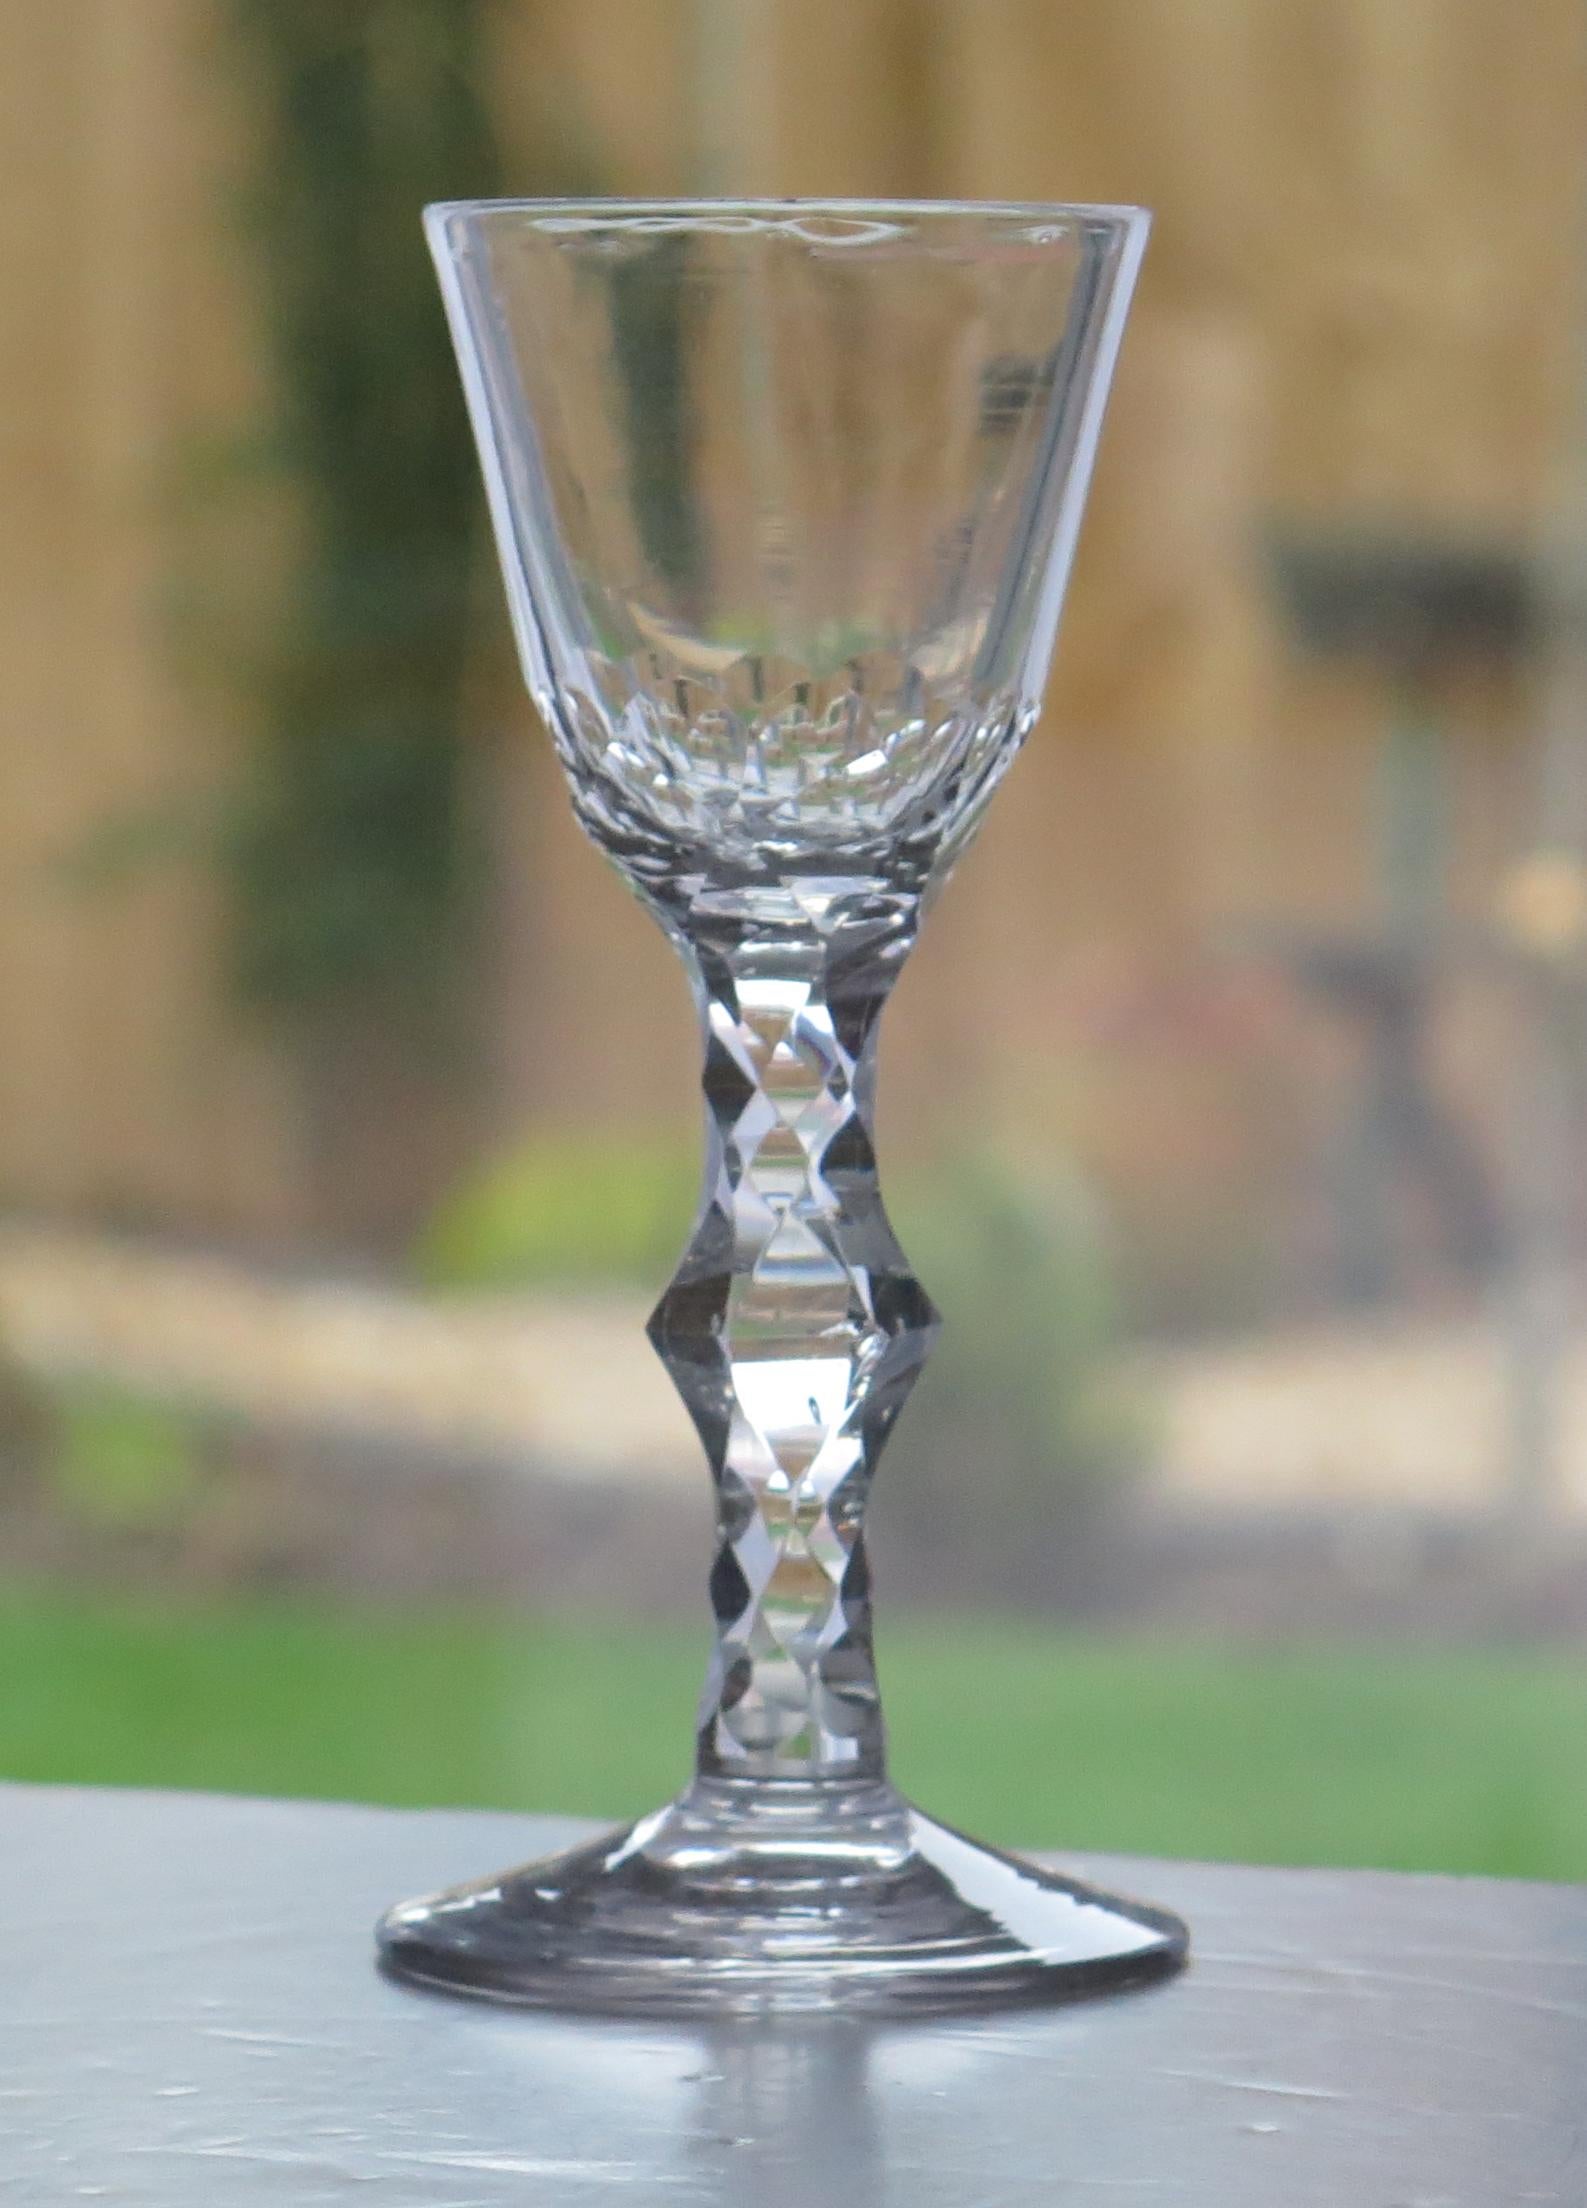 Il s'agit d'un très bon verre à vin soufflé à la main, anglais, géorgien, avec un pied à facettes, datant du 18e siècle, vers 1785.

Ces lunettes sont très recherchées. Il est fabriqué en verre au plomb anglais, relativement lourd et d'une couleur